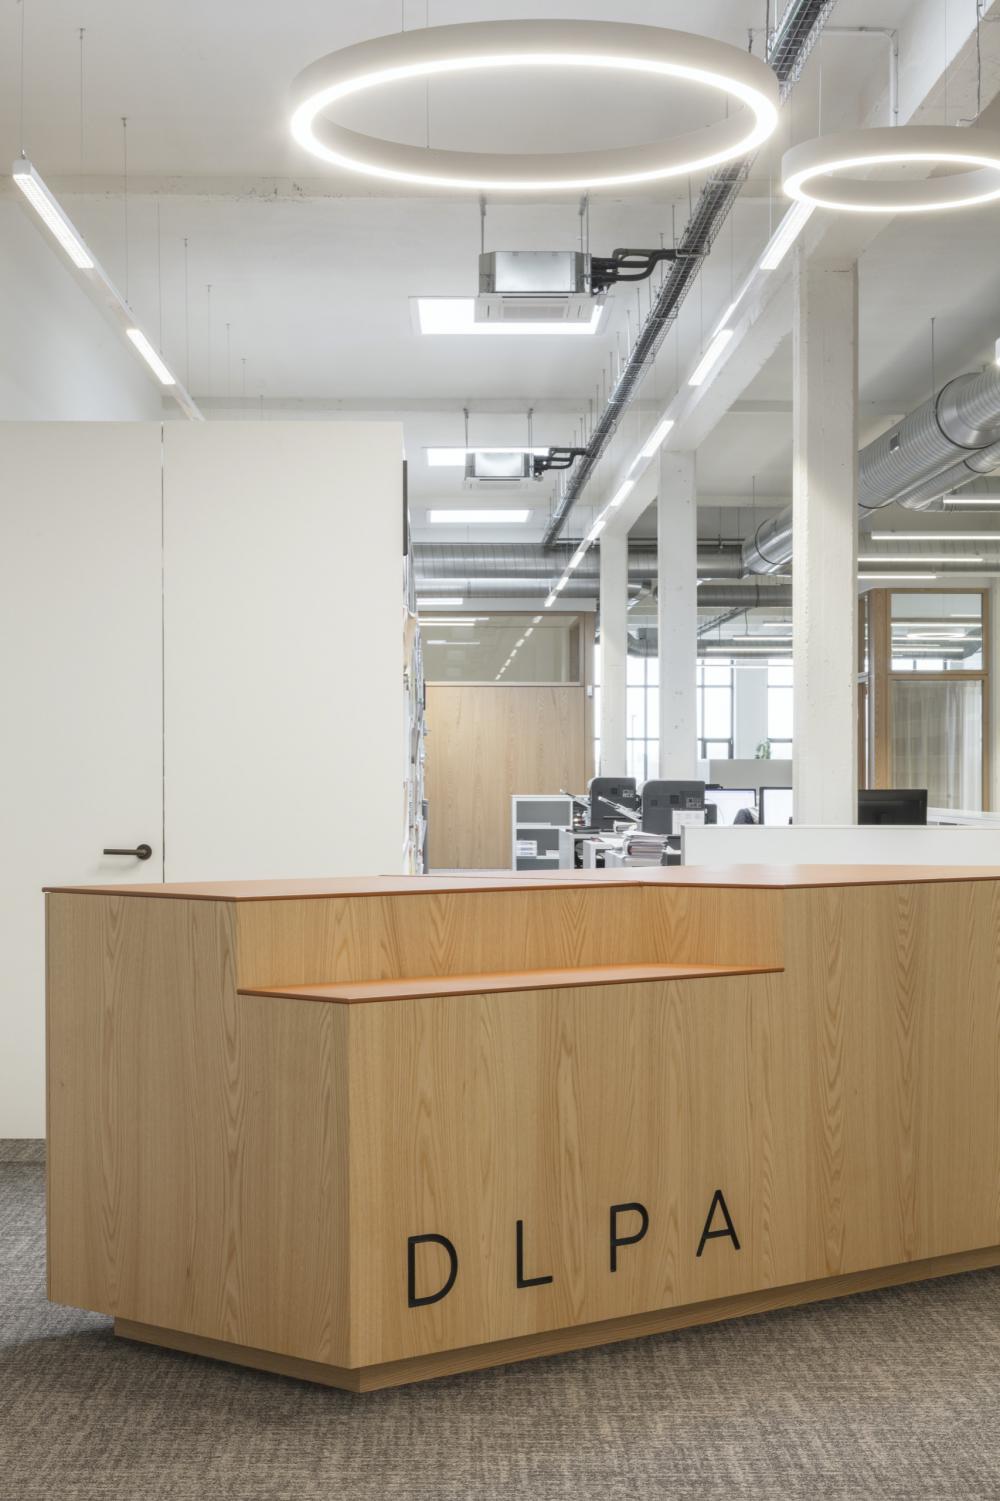 DLPA totaalinrichting kantoorinrichting De Laere Decor totaalproject interieur